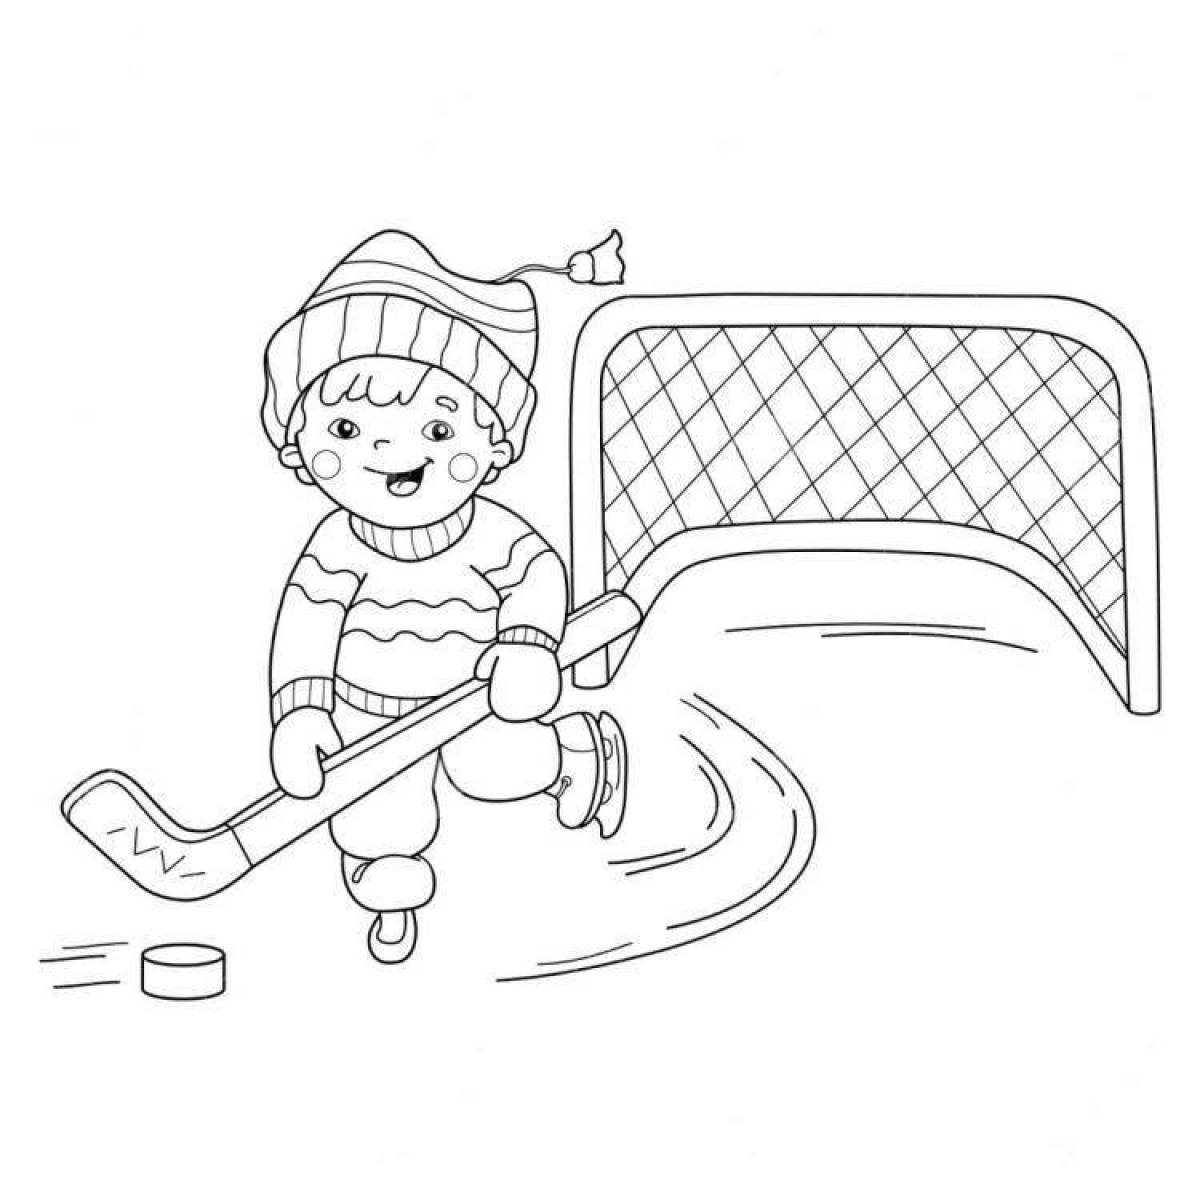 Радостная картинка с зимними видами спорта для детей в детском саду